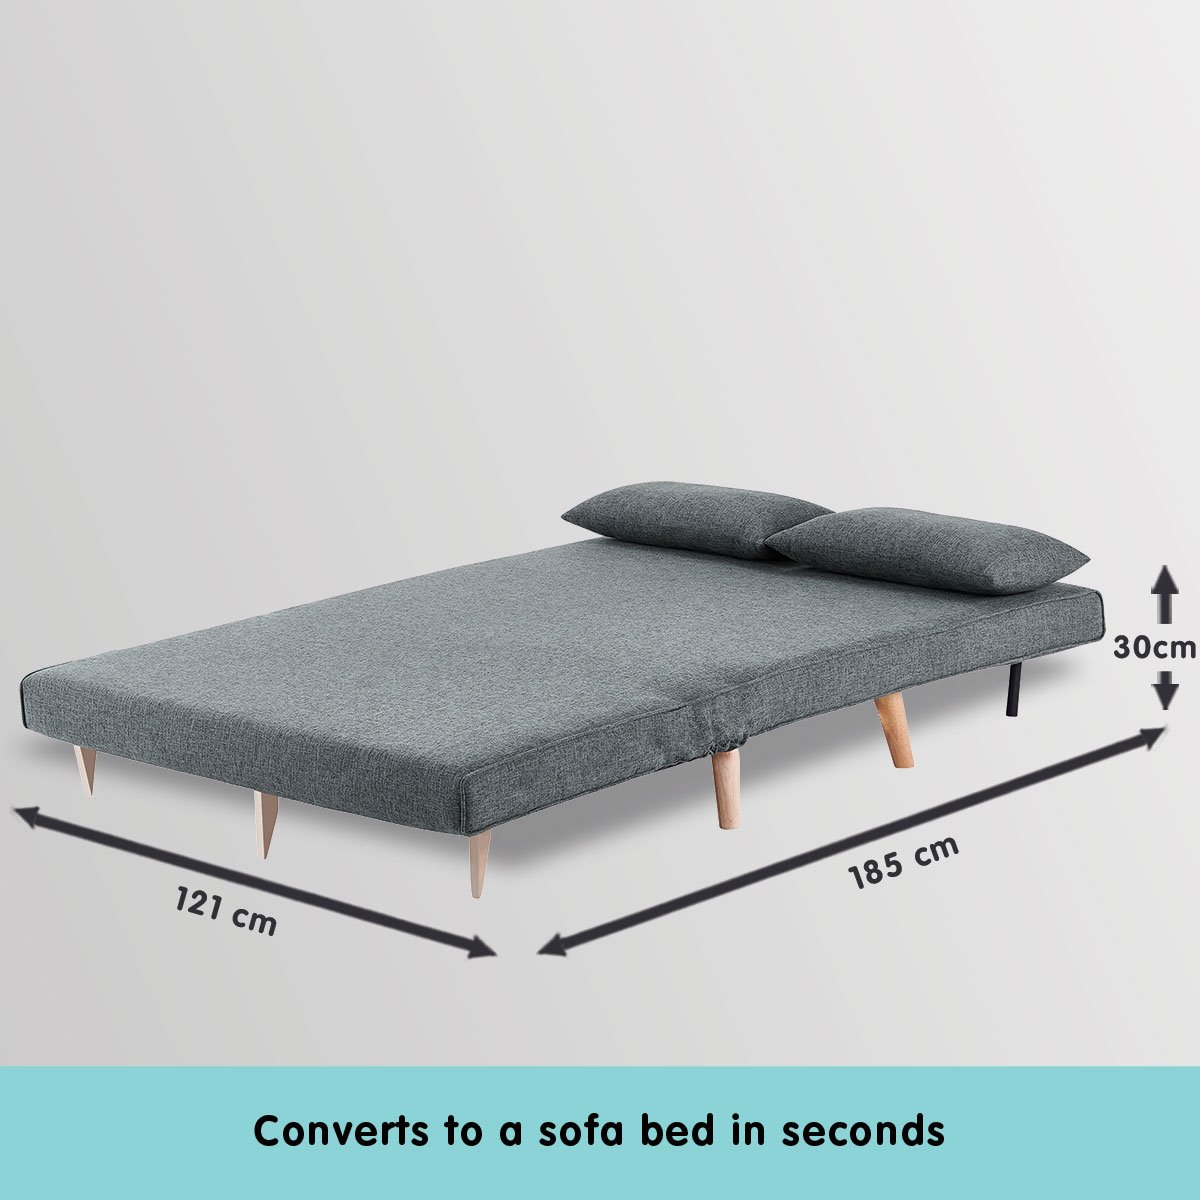 indoor furniture 2-Seater Adjustable Sofa Bed Lounge Linen - Dark Grey